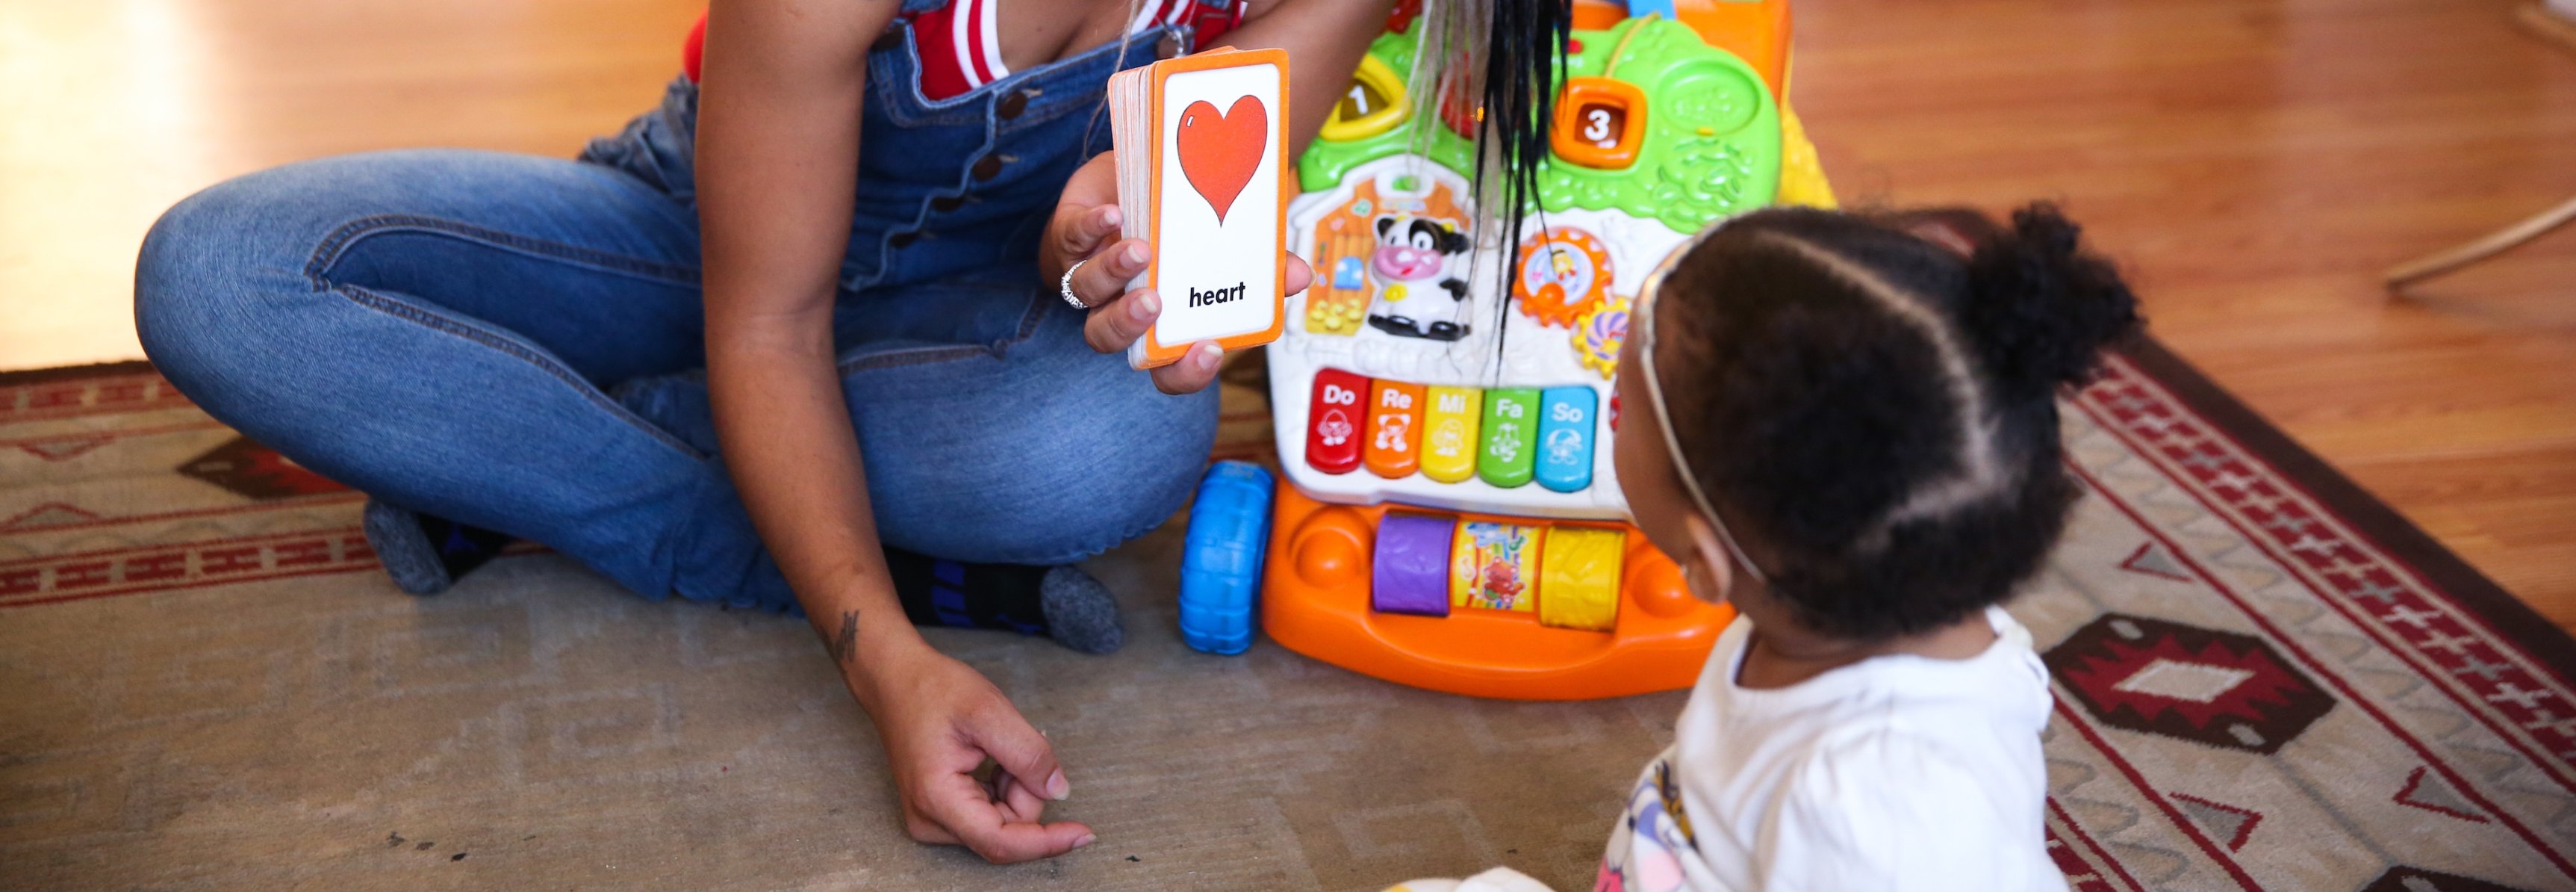 Primer plano de una madre de color mostrándole a su bebé una tarjeta con la palabra corazón escrita